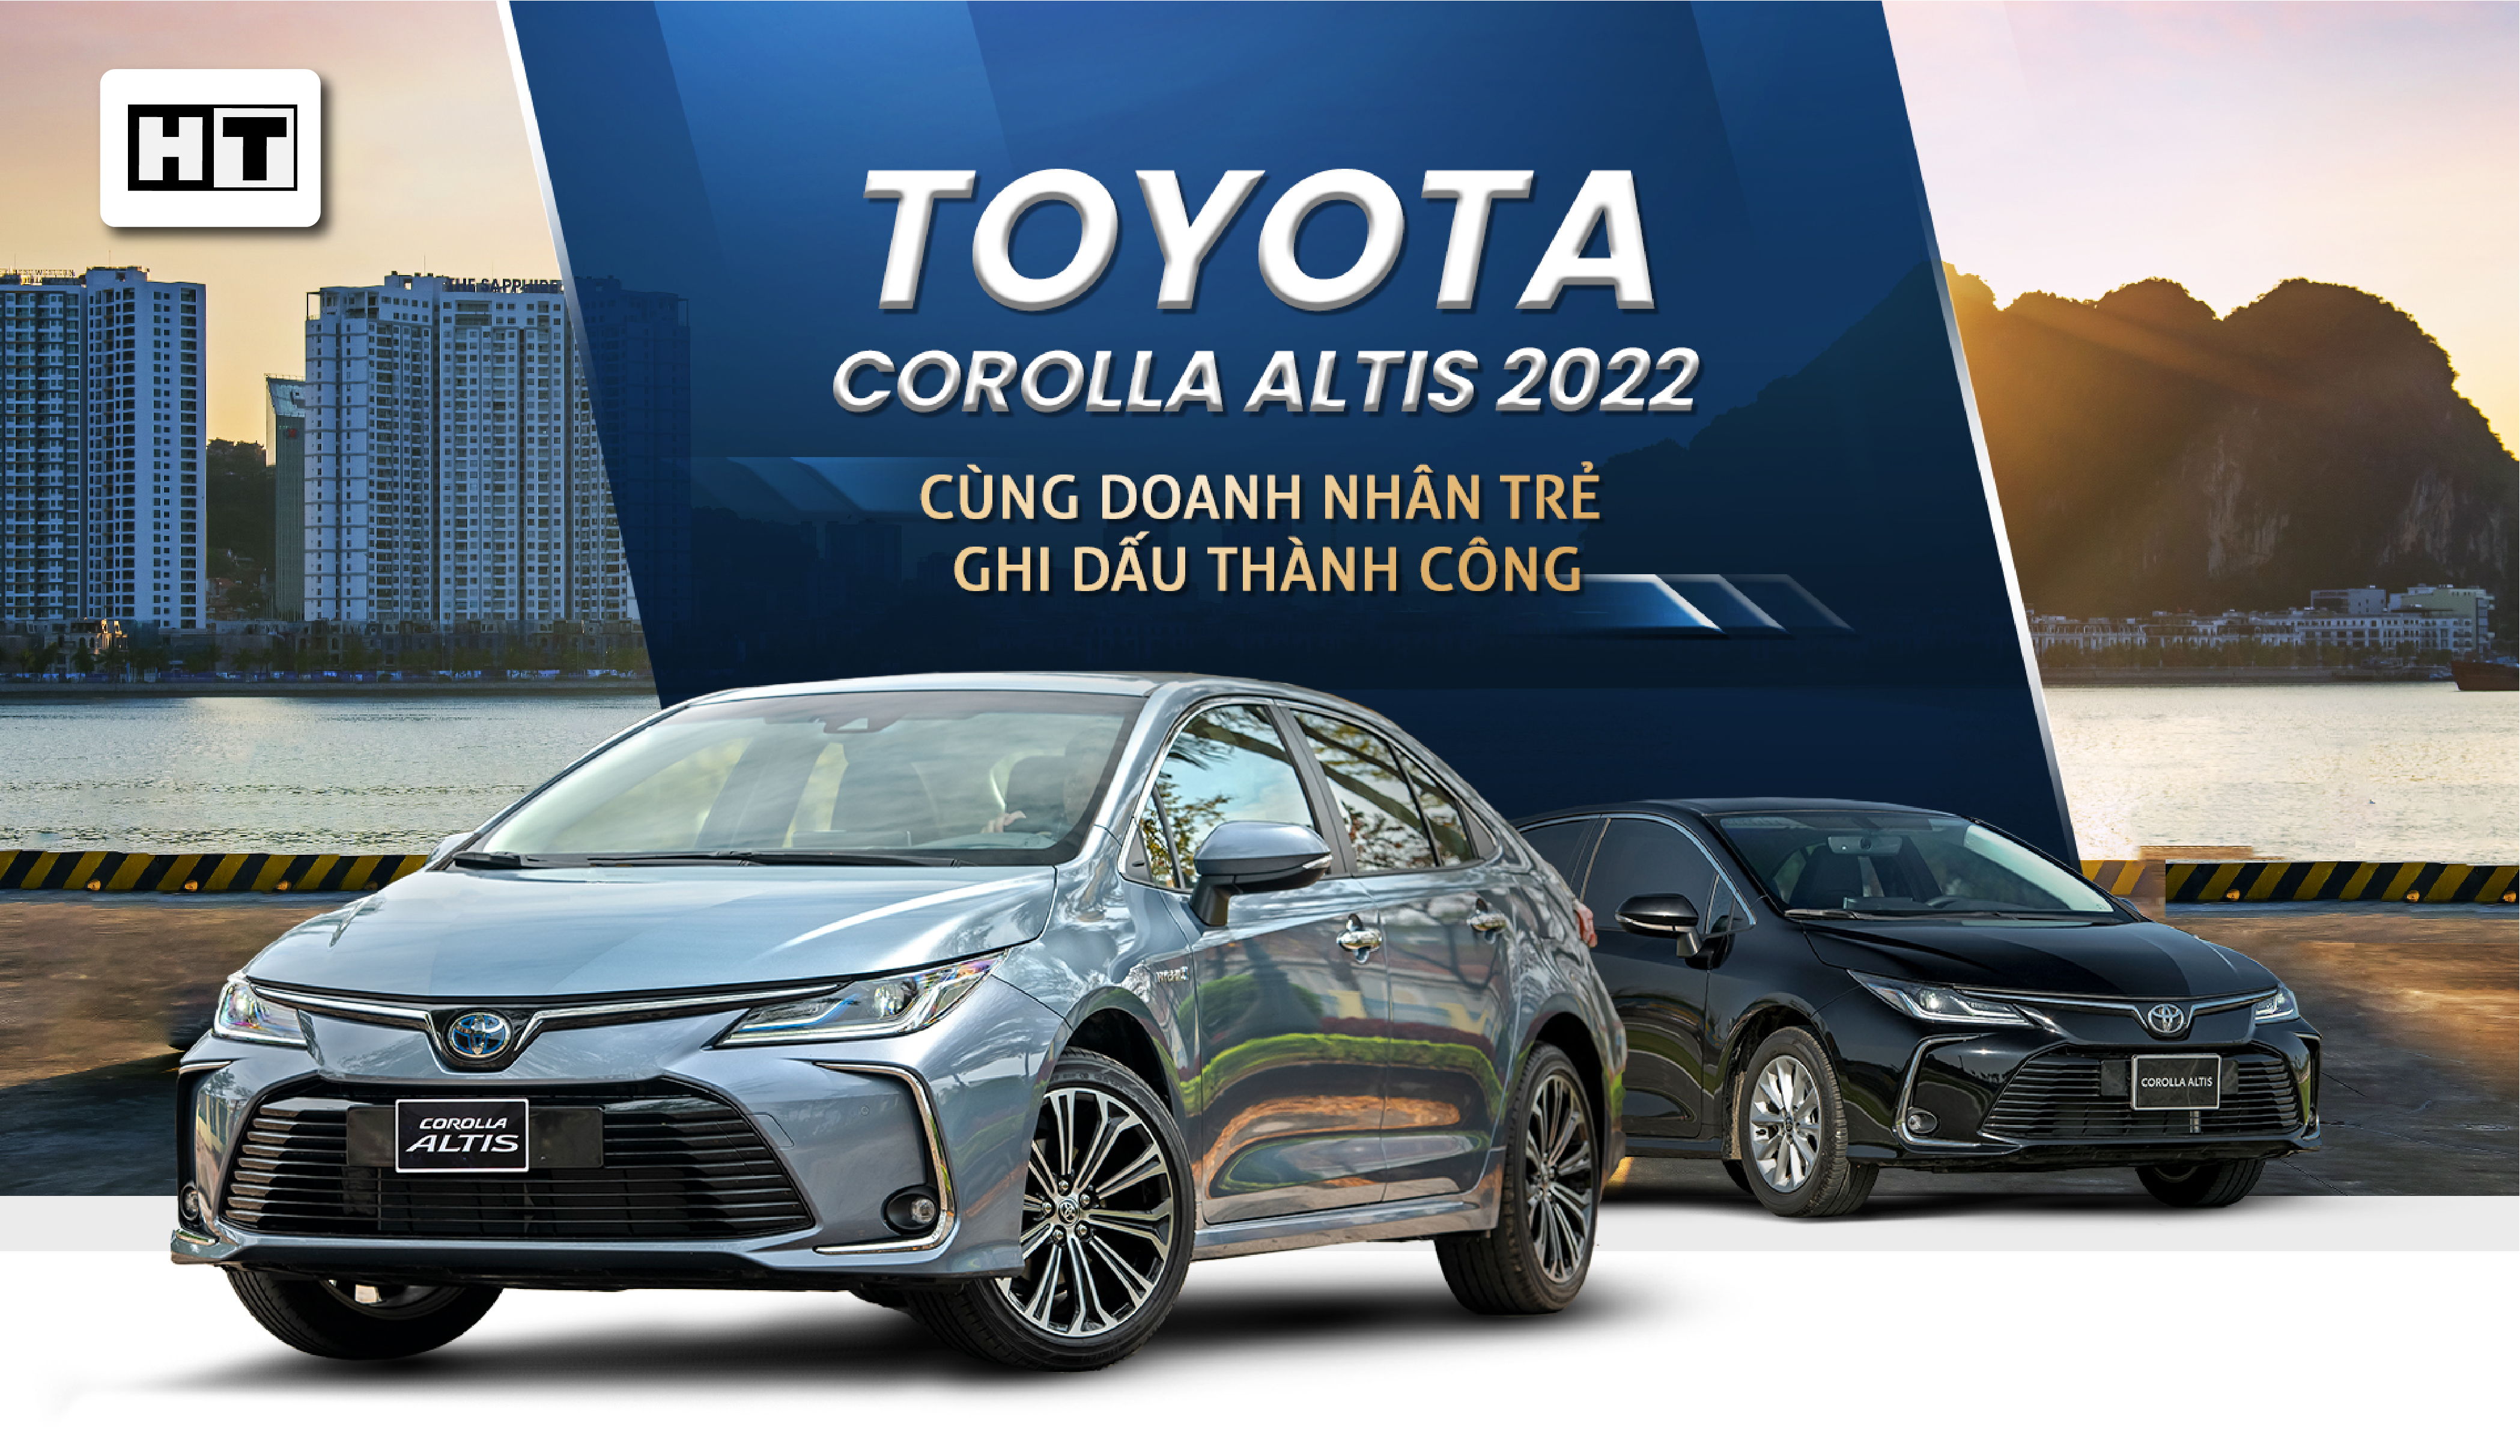 Toyota Altis ghi dấu thành côngI